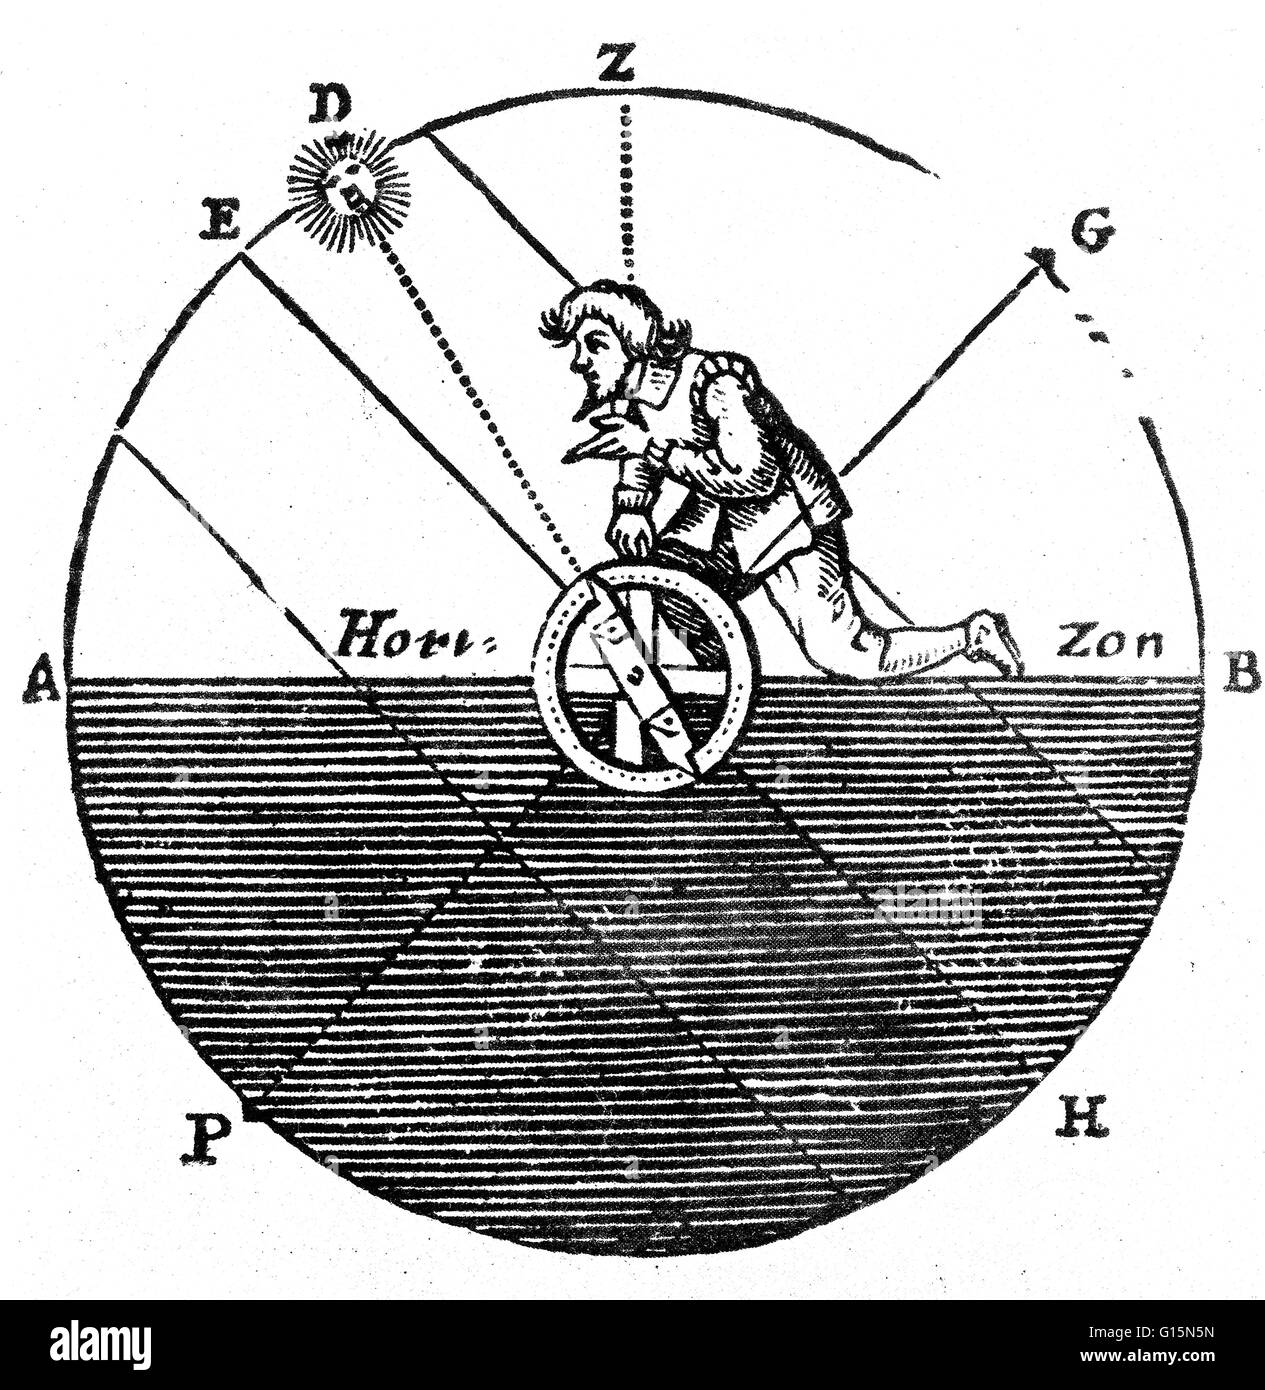 Xilografía del siglo xvii crudo da una ilustración de cómo el astrolabio  fue utilizado para medir la distancia zenith del sol. La distancia zenith  es el ángulo entre el punto indeterminado Z